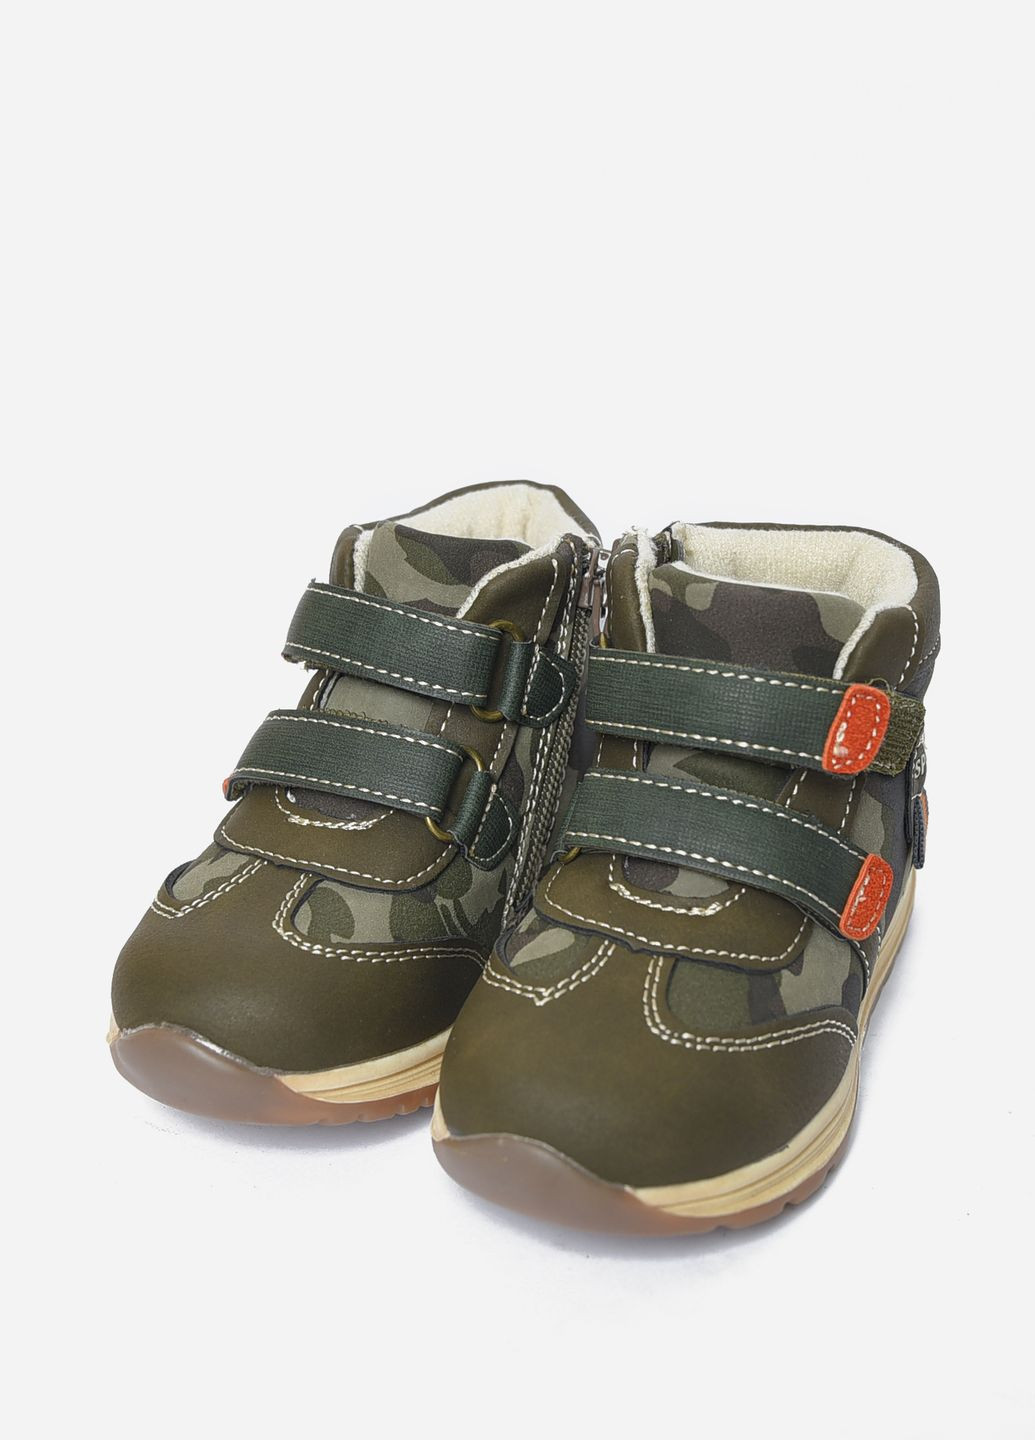 Хаки кэжуал осенние ботинки детские демисезонные для мальчика цвета хаки Let's Shop